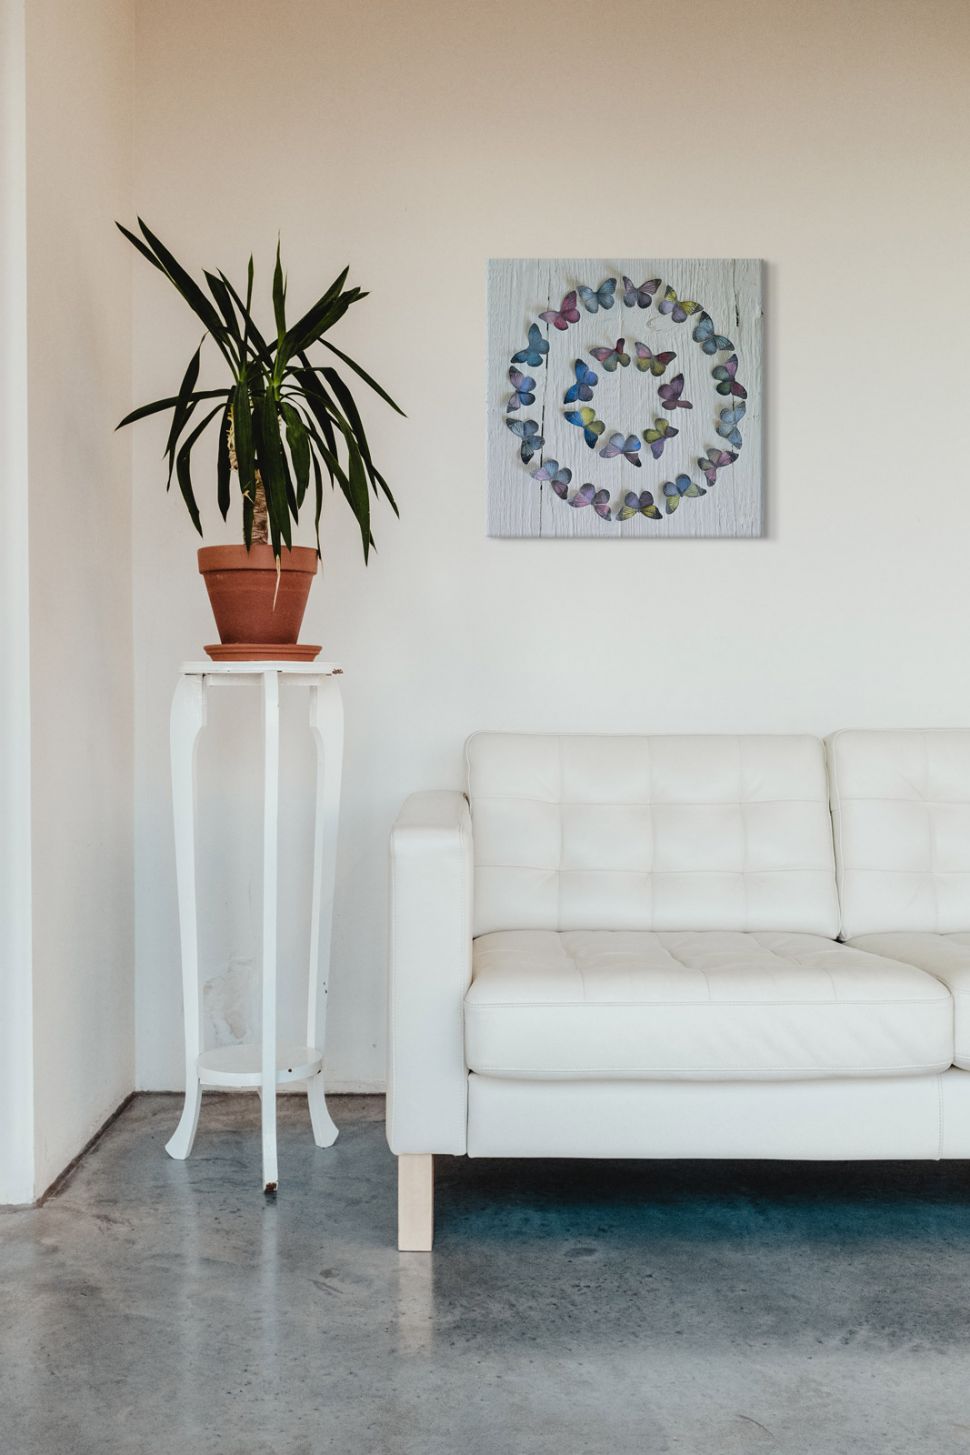 Canvas Koło z motyli autorstwa Howarda Shootera zawieszony w salonie nad białą kanapą obok kwiatka